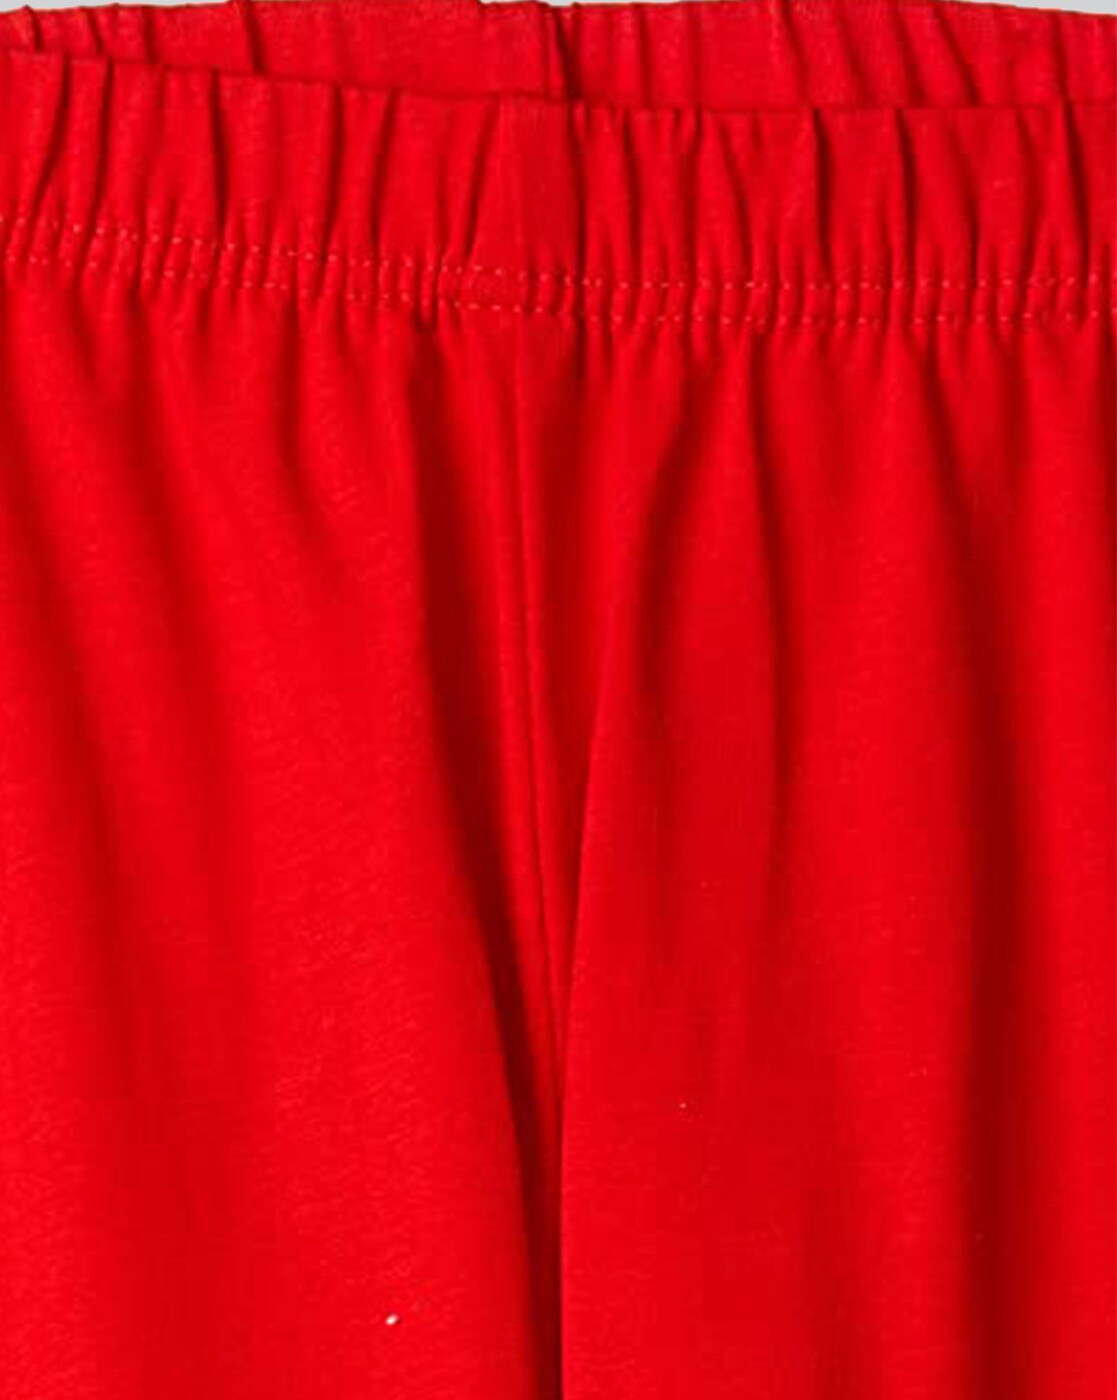 Buy Red Leggings for Girls by LYRA Online